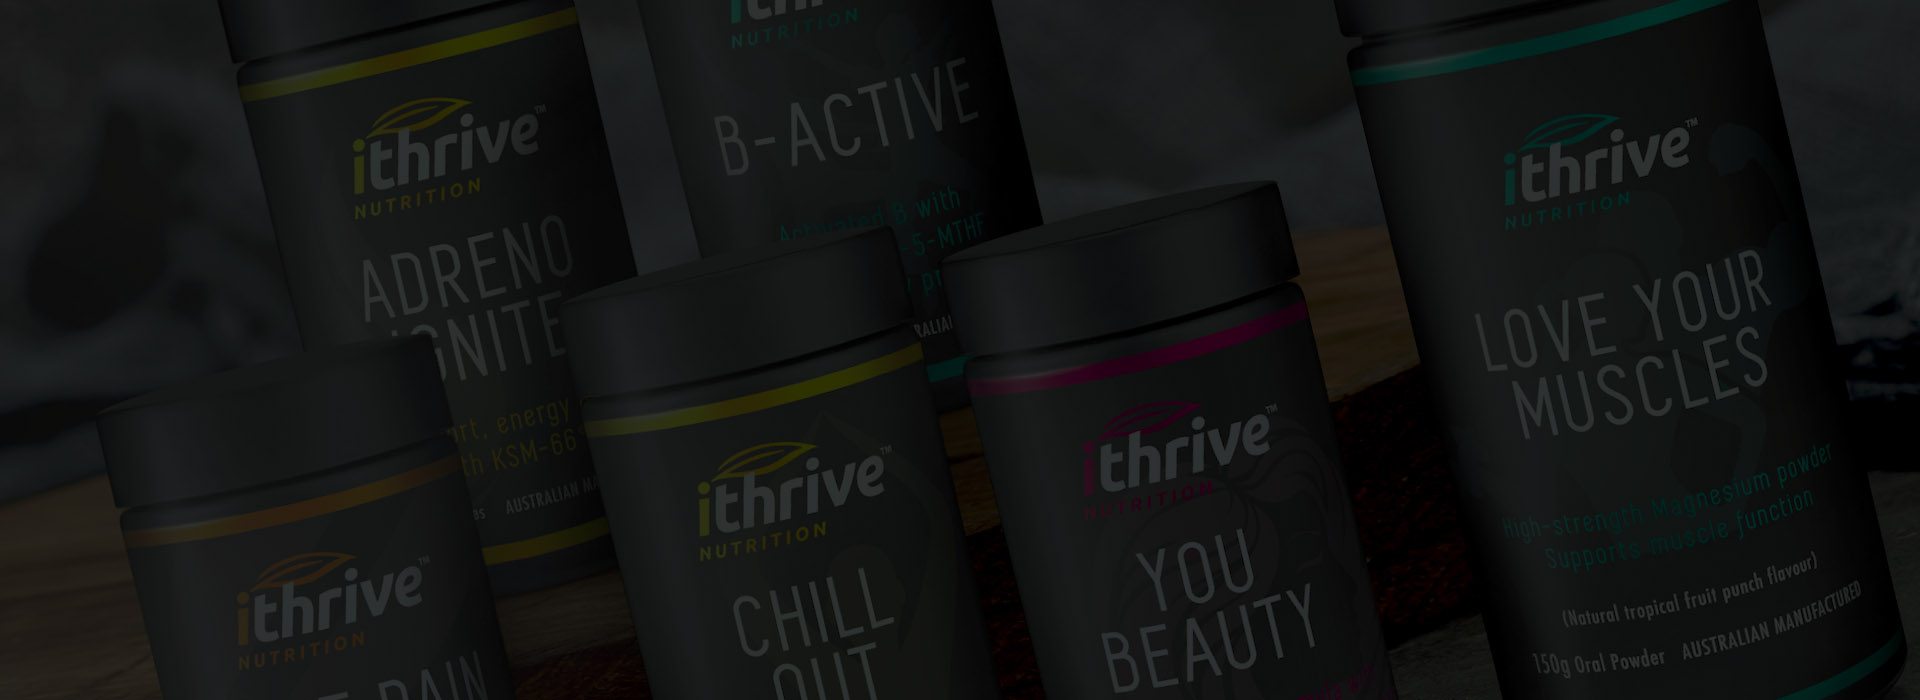 iThrive premium product design